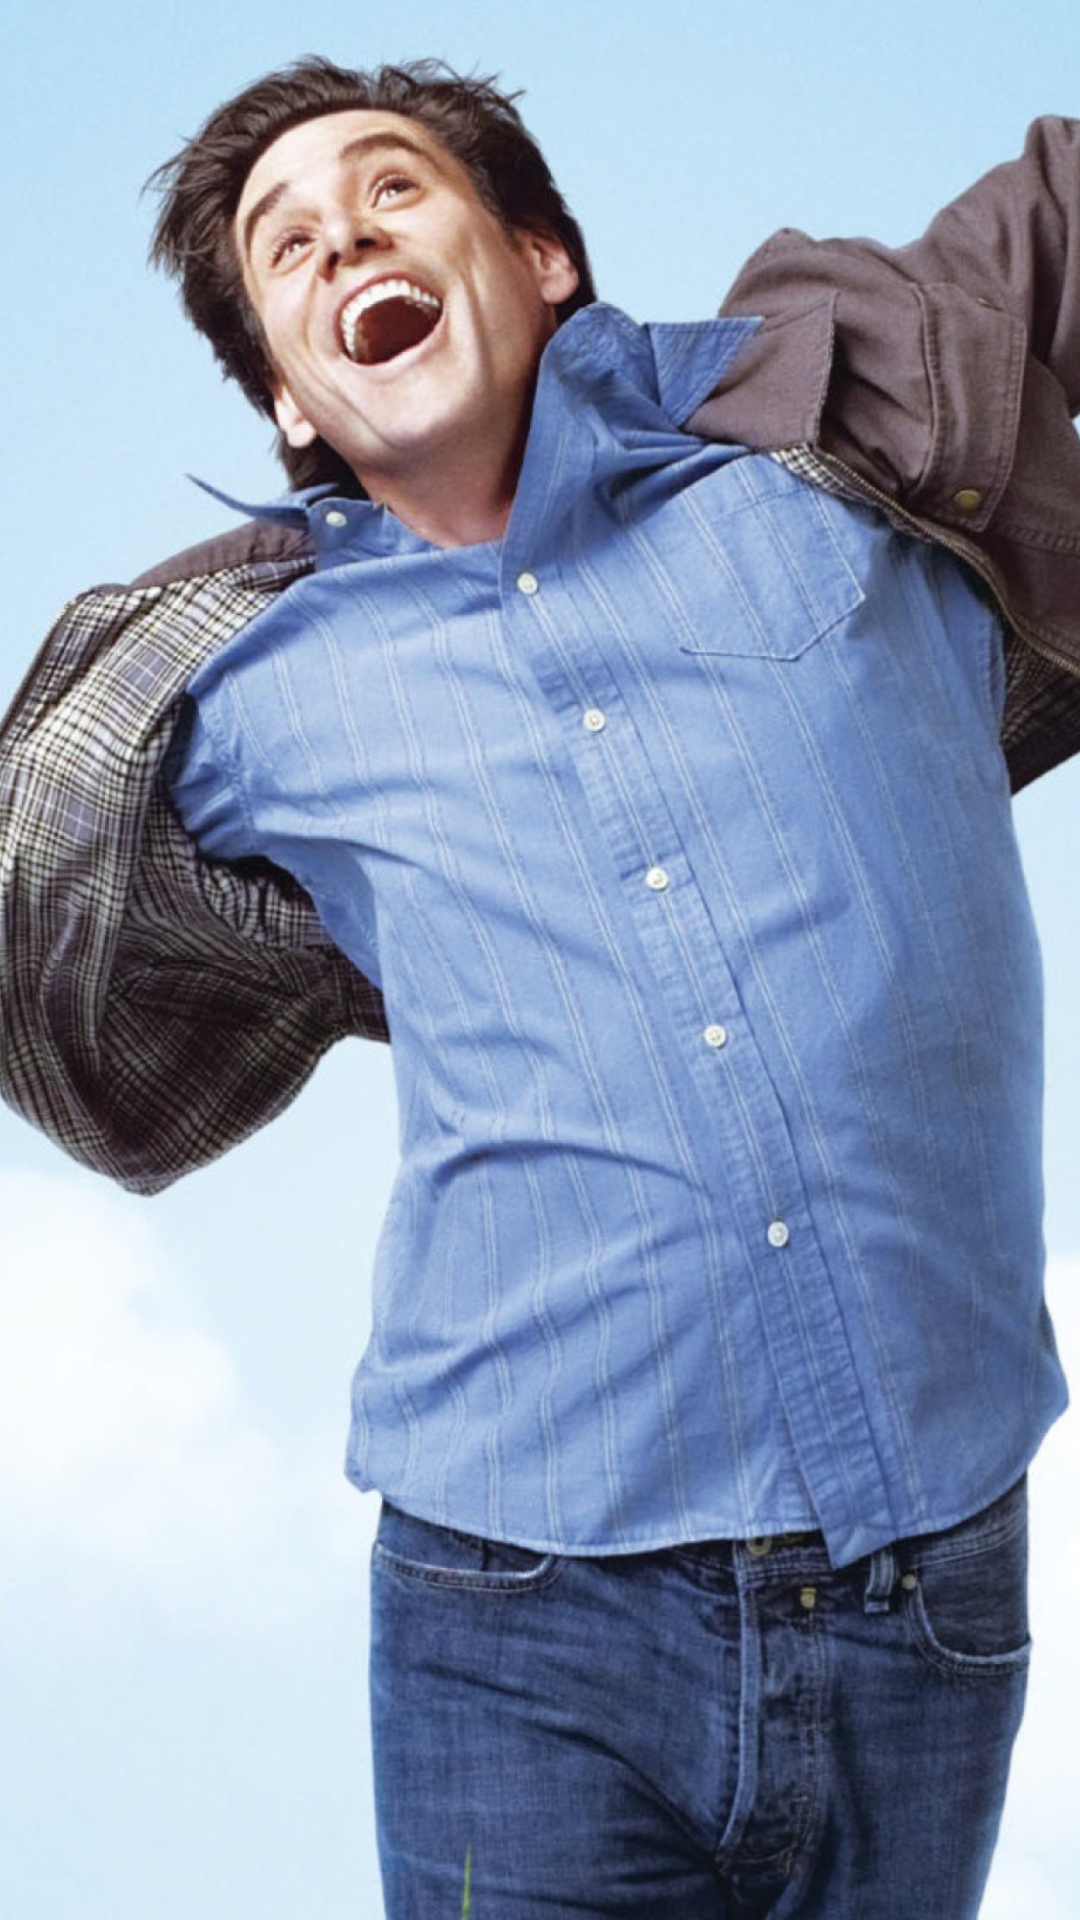 Jim Carrey In Yes Man wallpaper 1080x1920